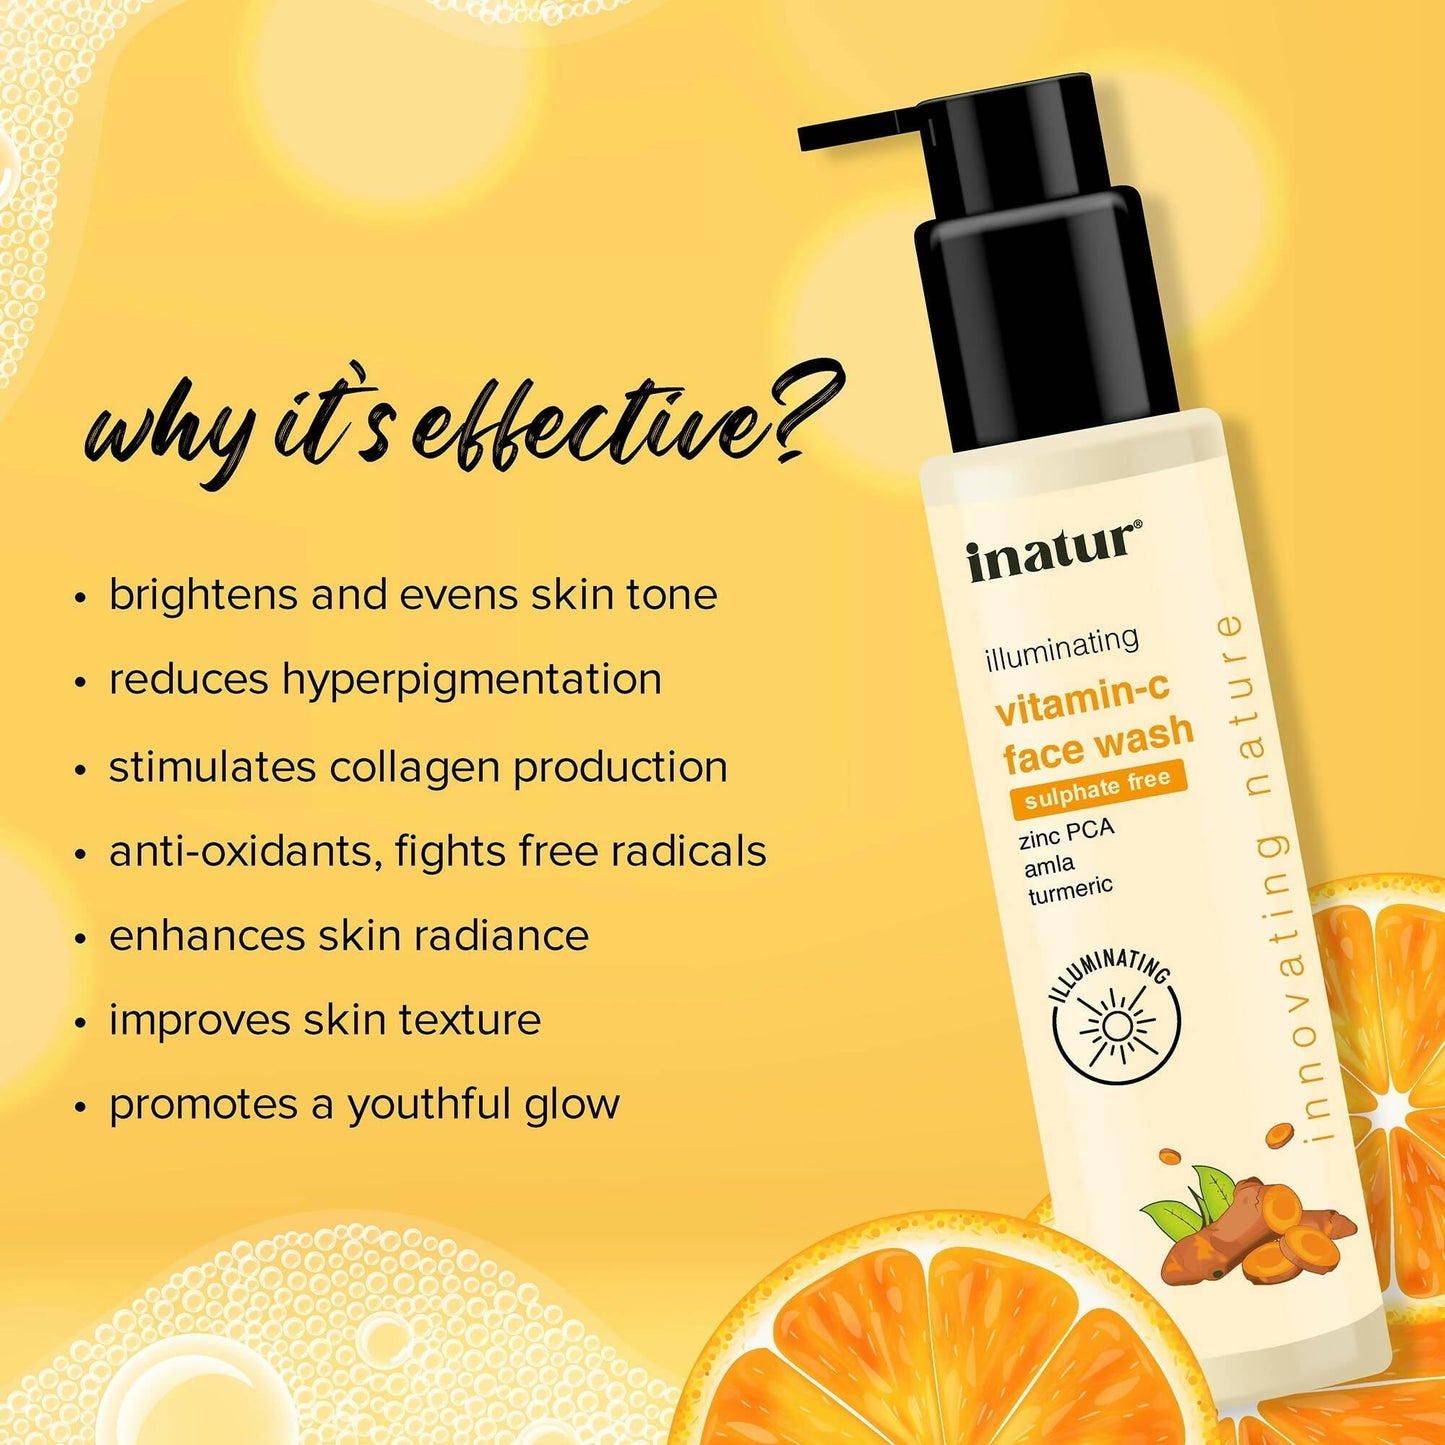 Inatur Vitamin C Face Wash